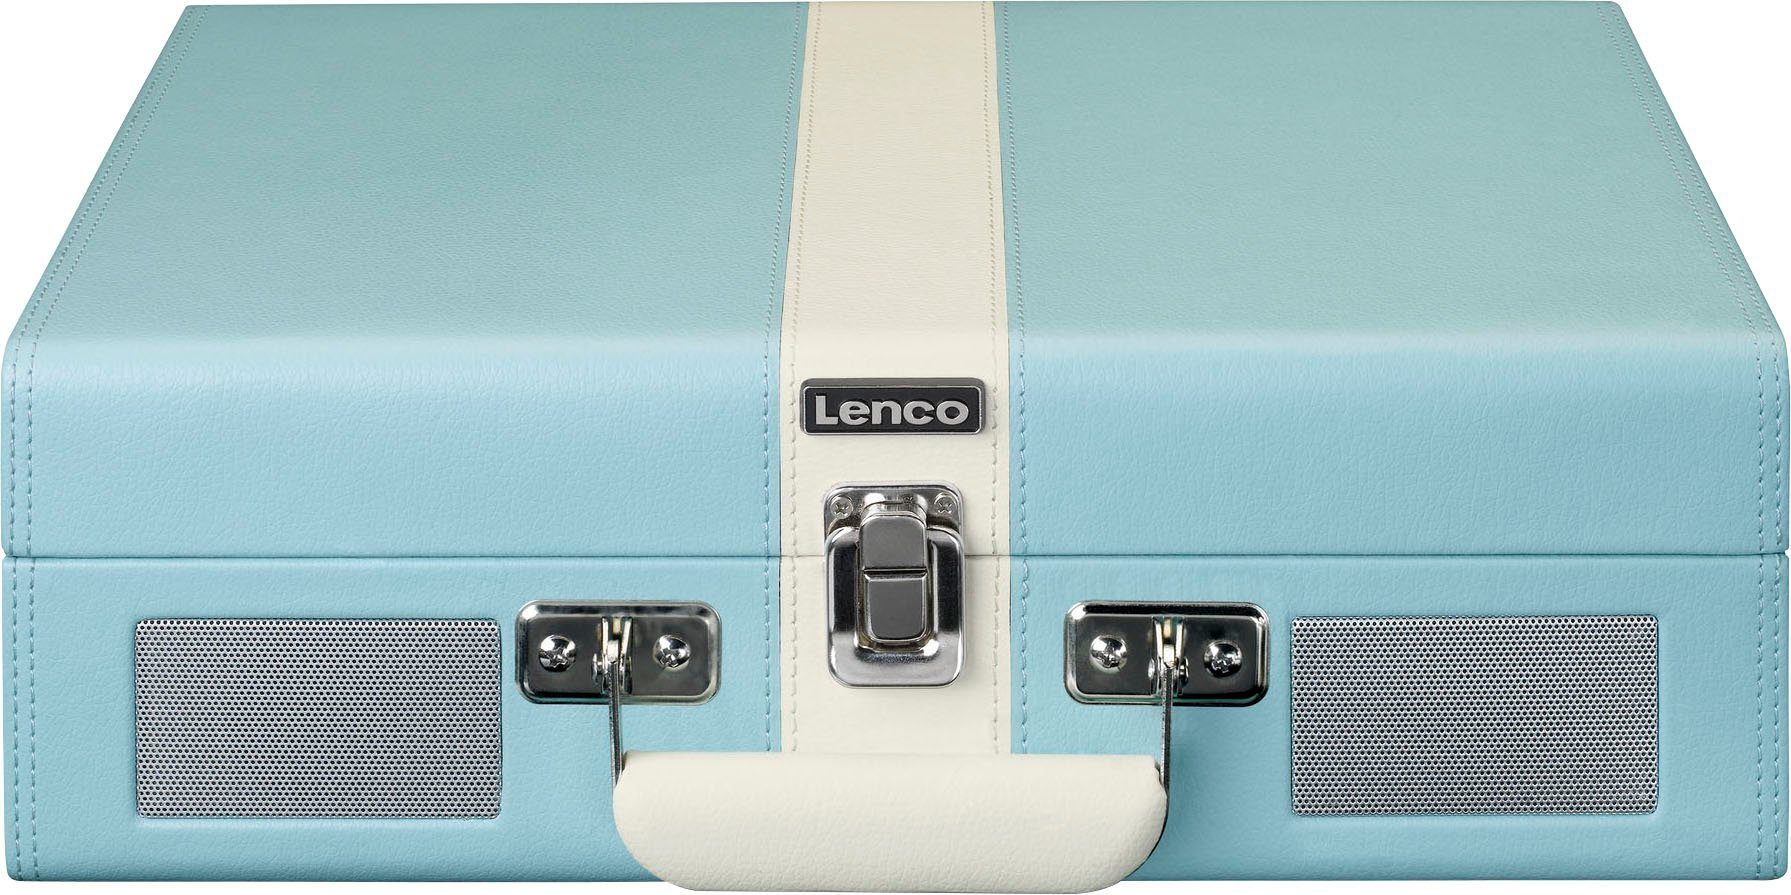 Koffer-Plattenspieler mit (Riemenantrieb) eingebauten Lsp. Lenco und BT Plattenspieler Blau-Weiß